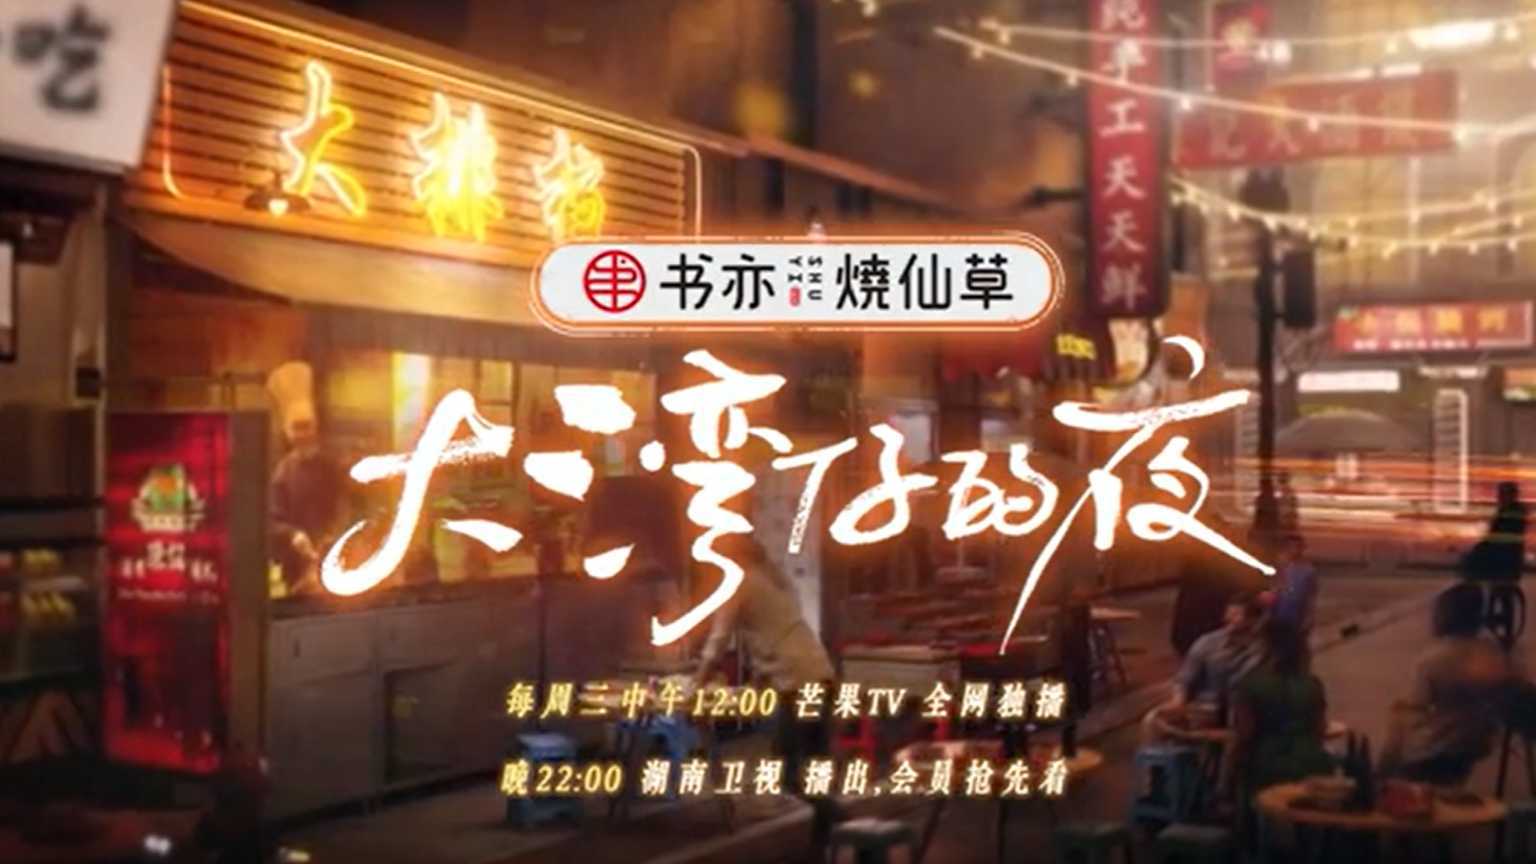 芒果TV大湾仔的夜宣传片粤语版 深度配音粤语男5作品